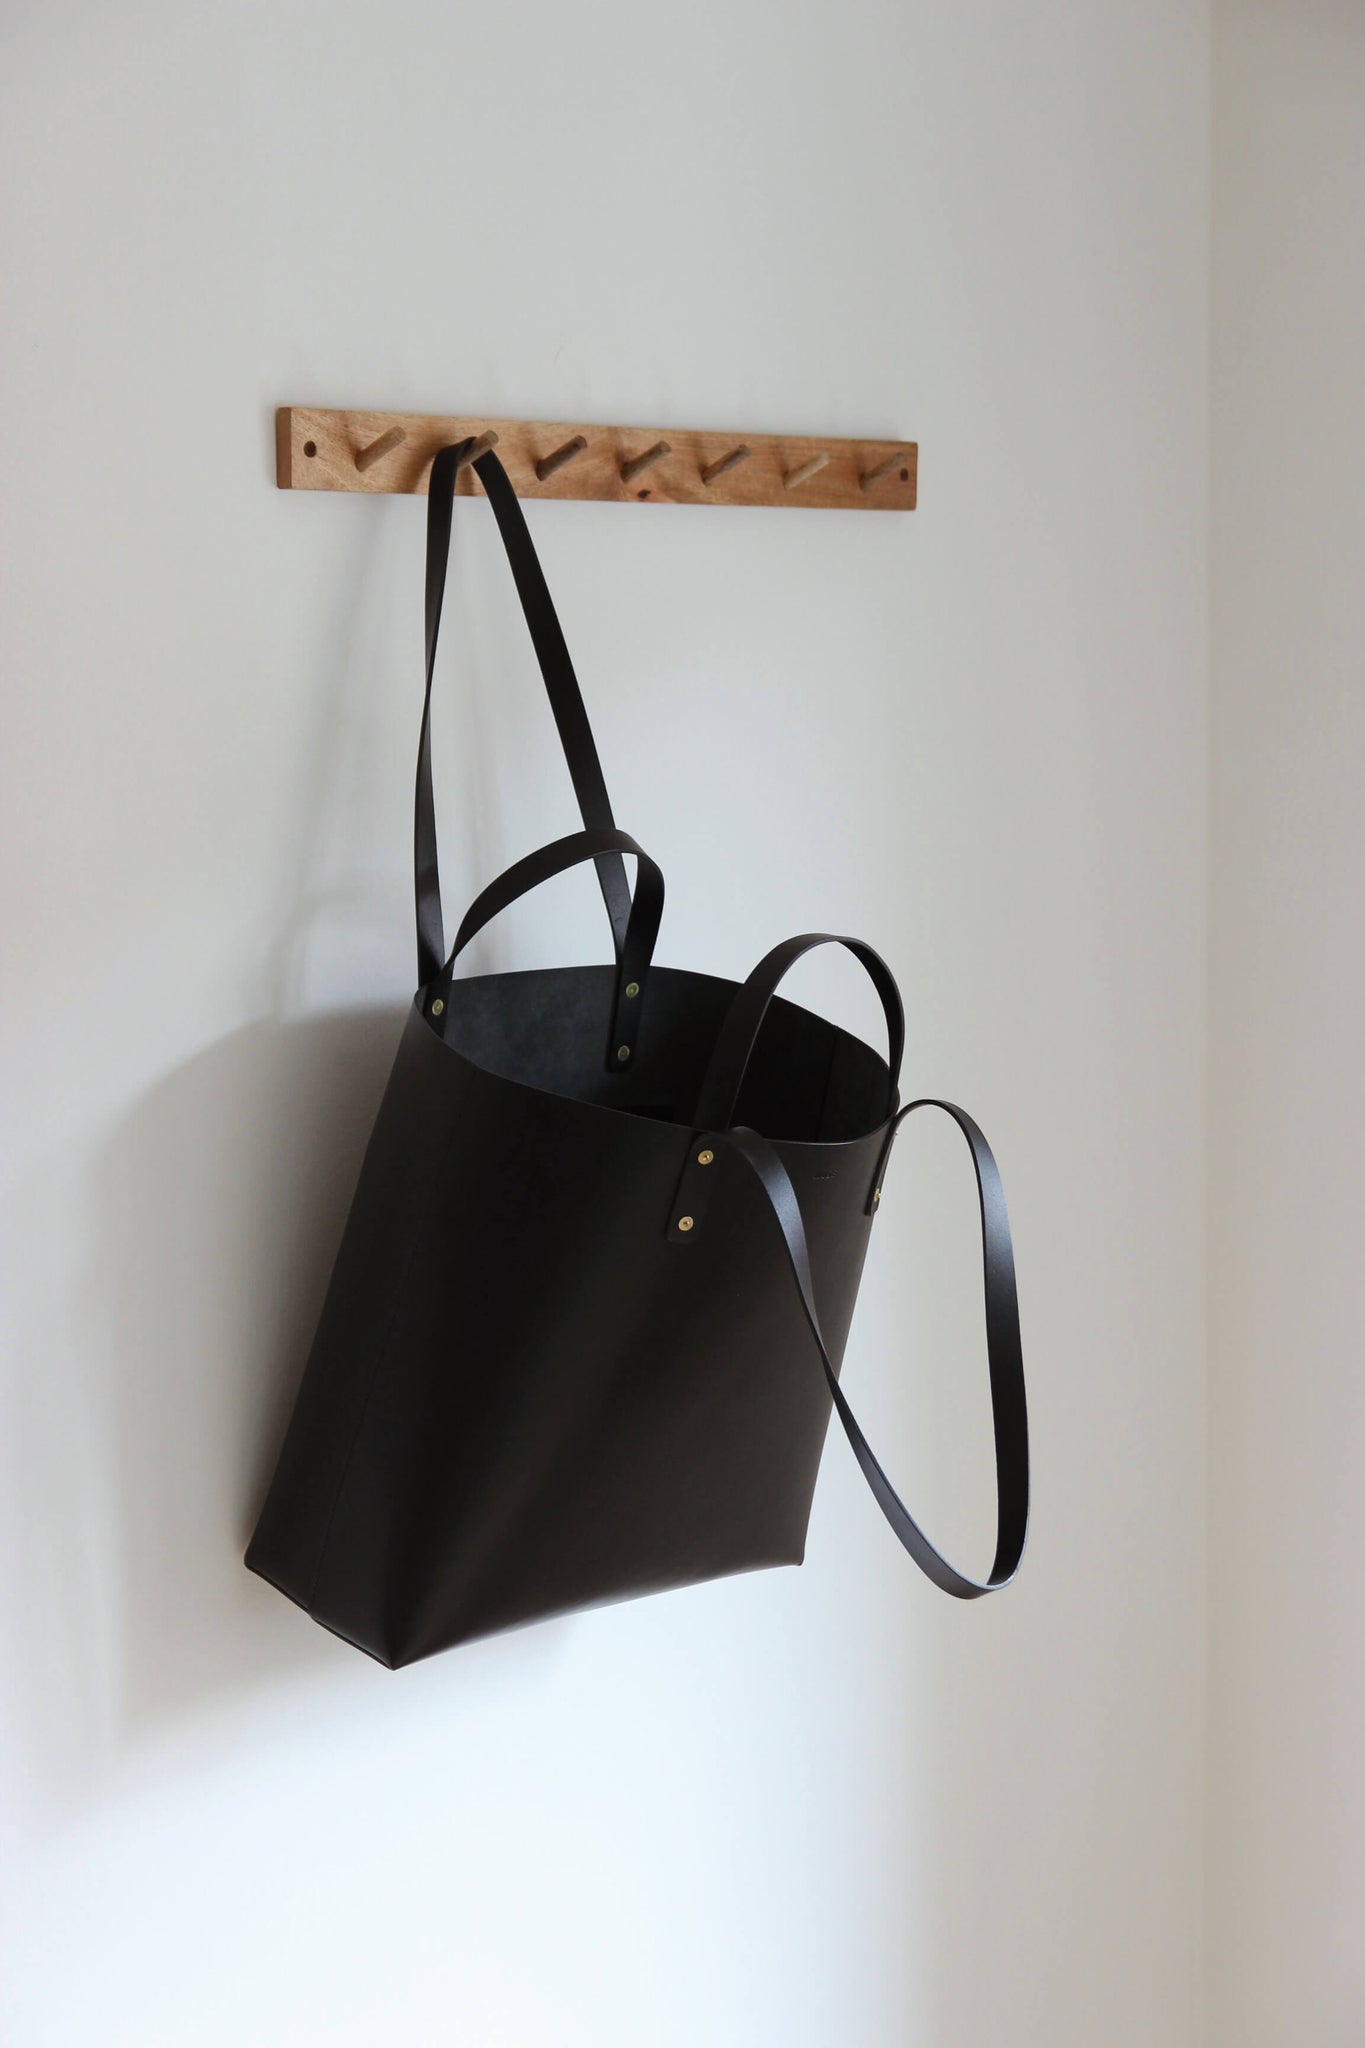 An einer Garderobenleiste aus Holz hängt an einem Henkel ein Leder Shopper in Schwarz.